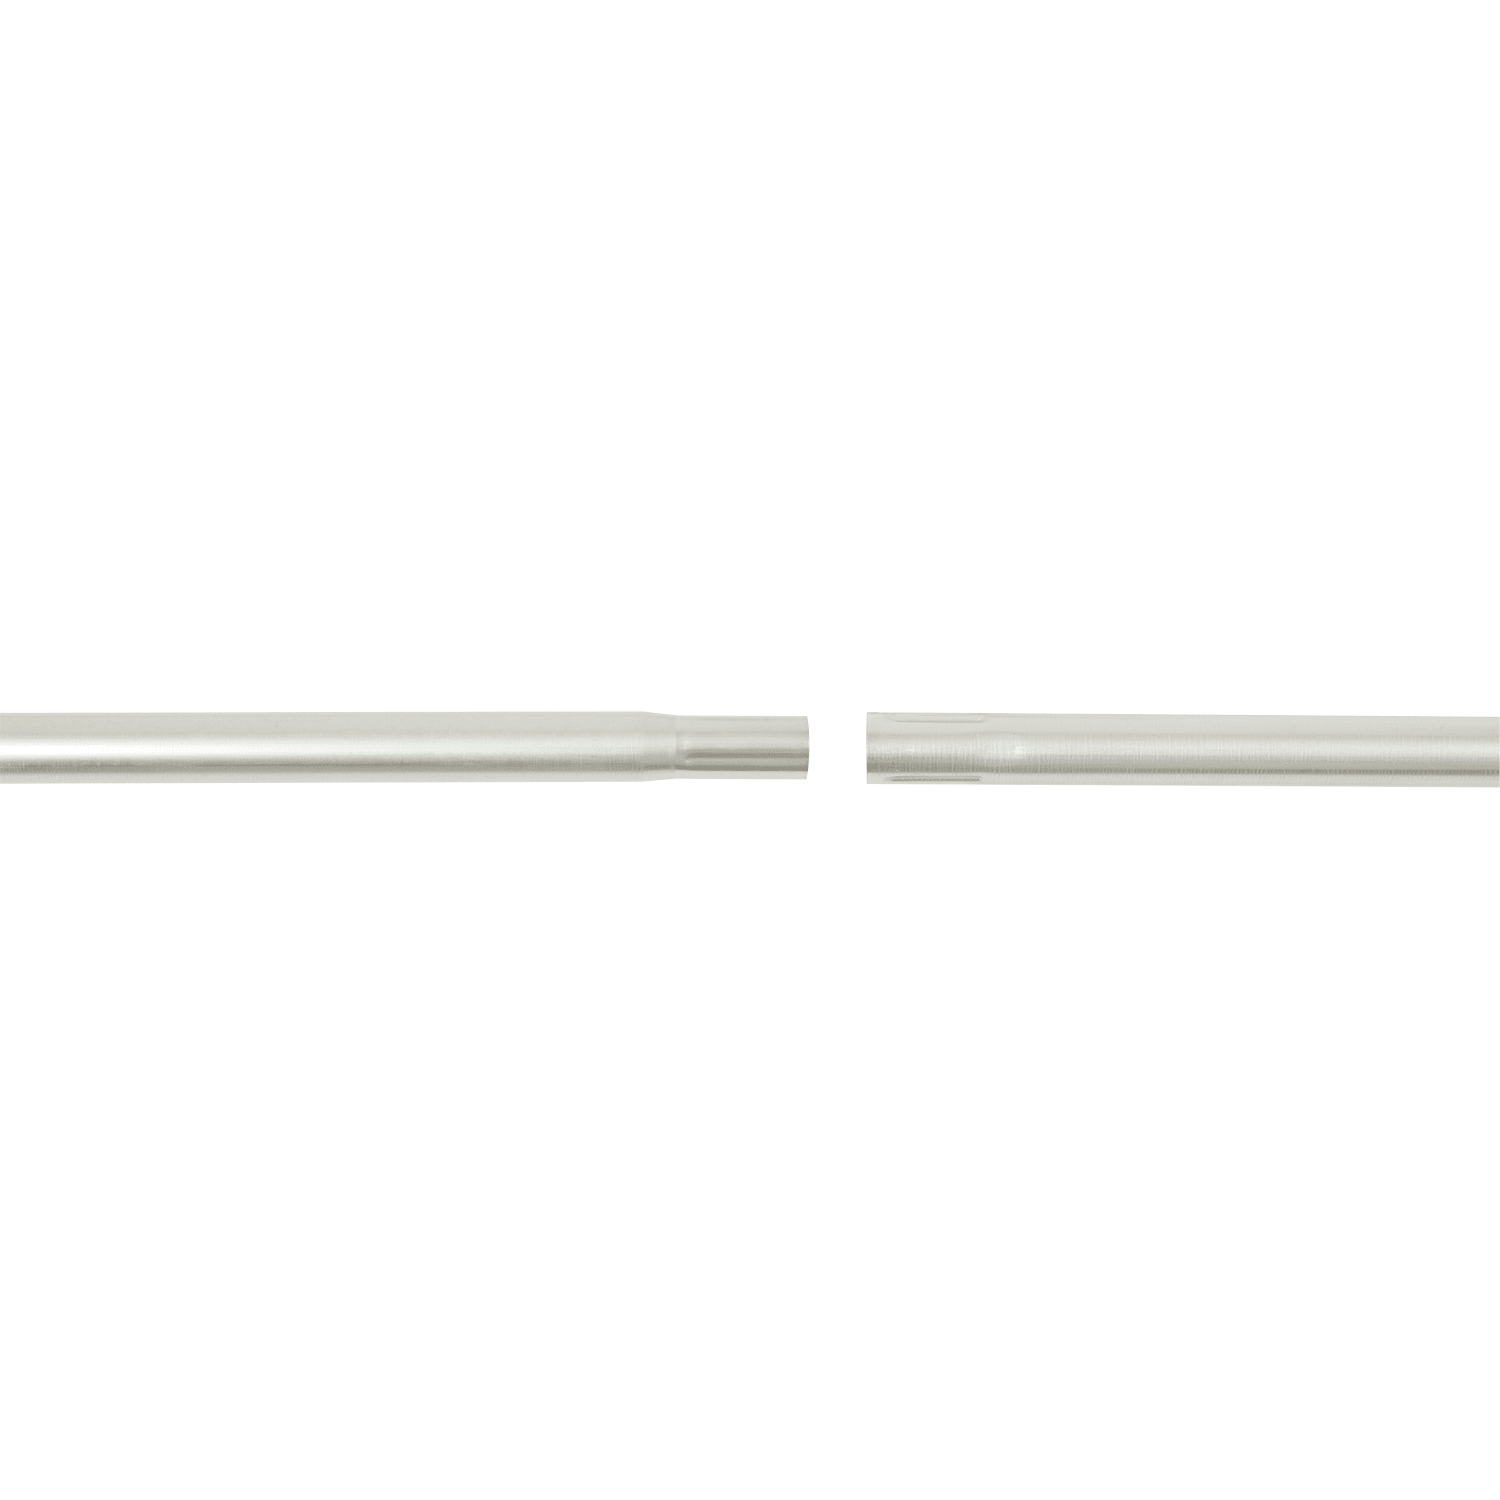 Erard - Tronçon acier emboîtable de 1.5 mètres Ø 50 mm x 1,5 mm. Galvanisé